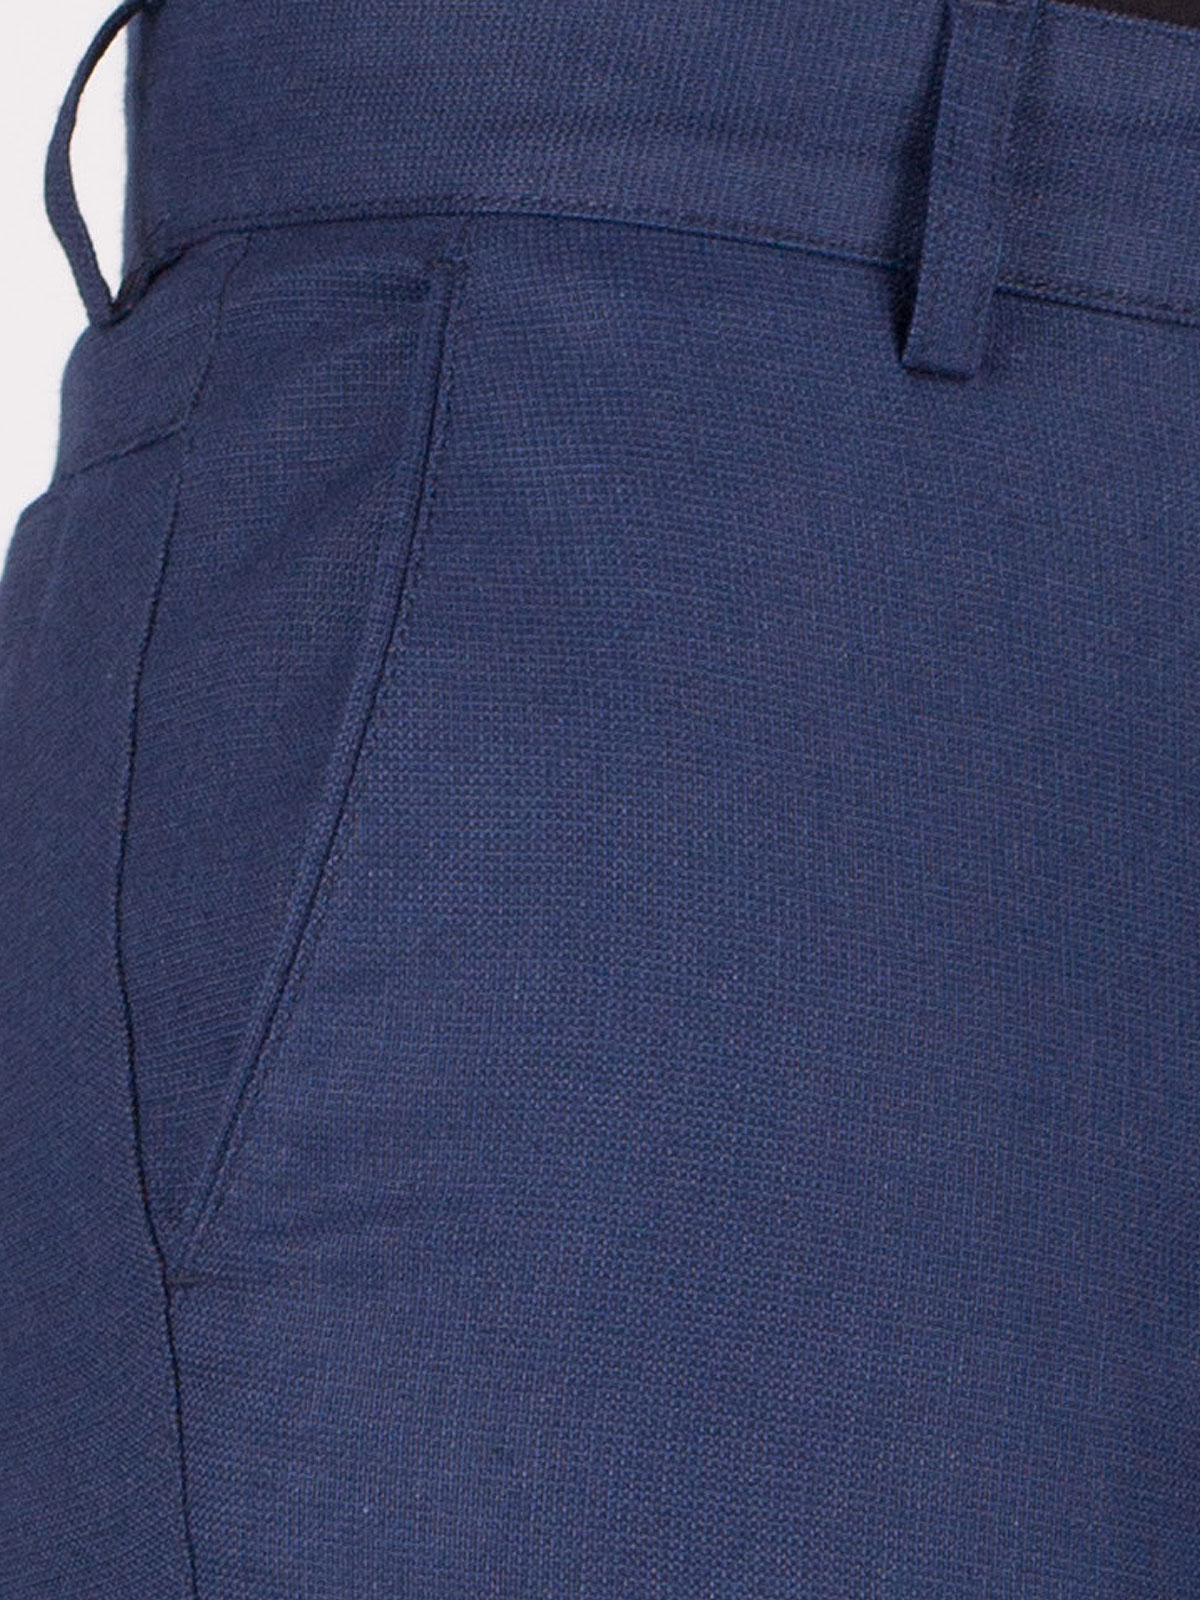 Παντελόνι σε σκούρο μπλε grain ύφασμα - 60255 € 21.93 img3